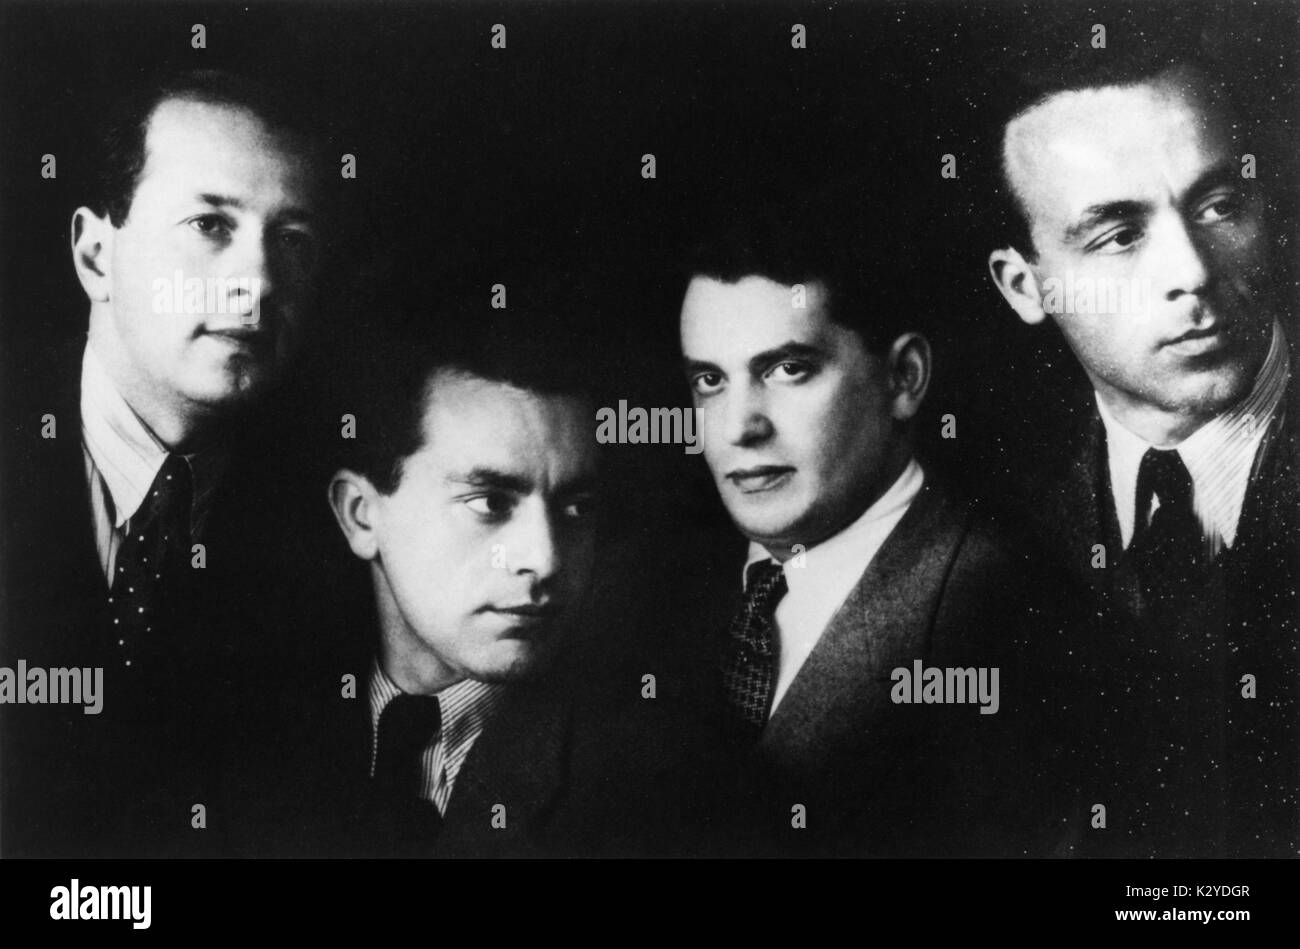 Budapest Quartet in 1933. from left to right: Josef Roisman,  Alexander Schneider, Boris Kryot, and Mischa Schneider. Stock Photo